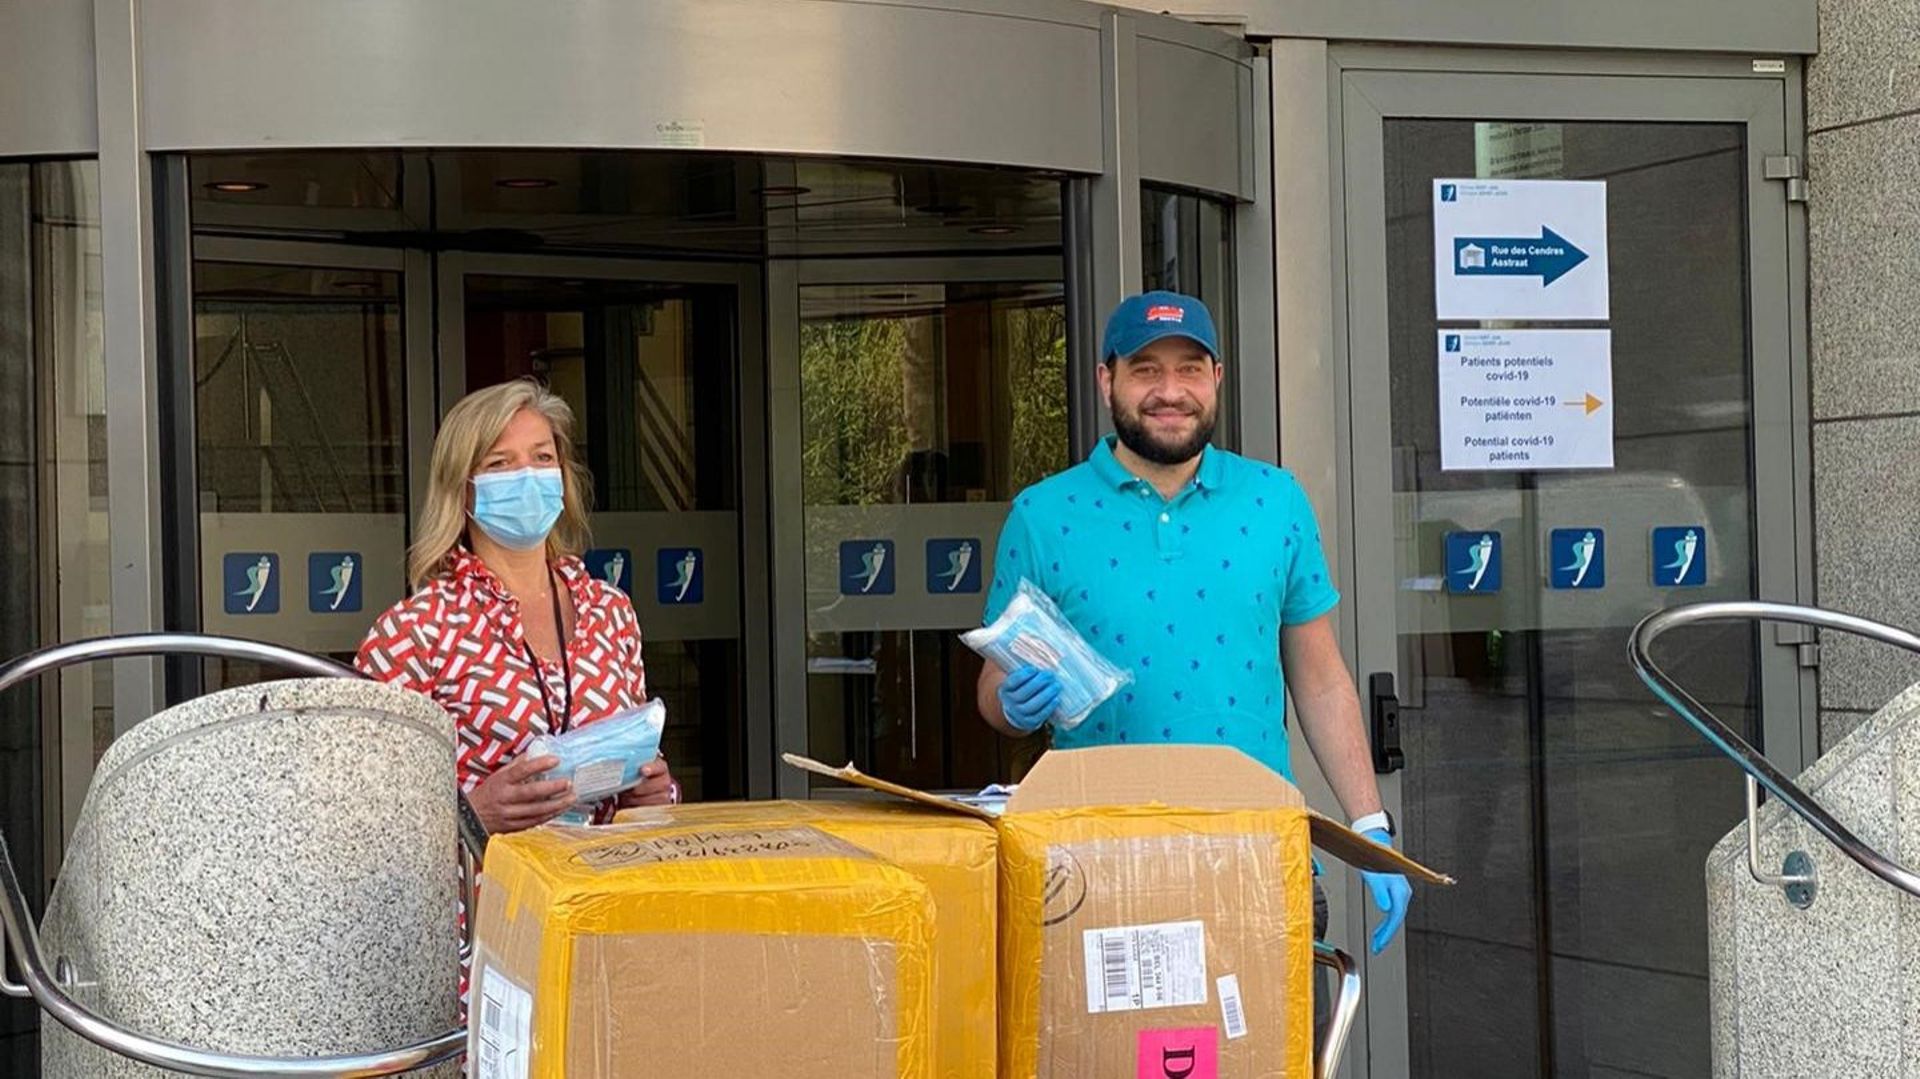 Turkoz Fatih s'est rendu ce jeudi matin à l'hôpital Saint-Jean, dans le centre de Bruxelles, pour livrer une partie des 50.000 masques chirurgicaux qu'il a achetés